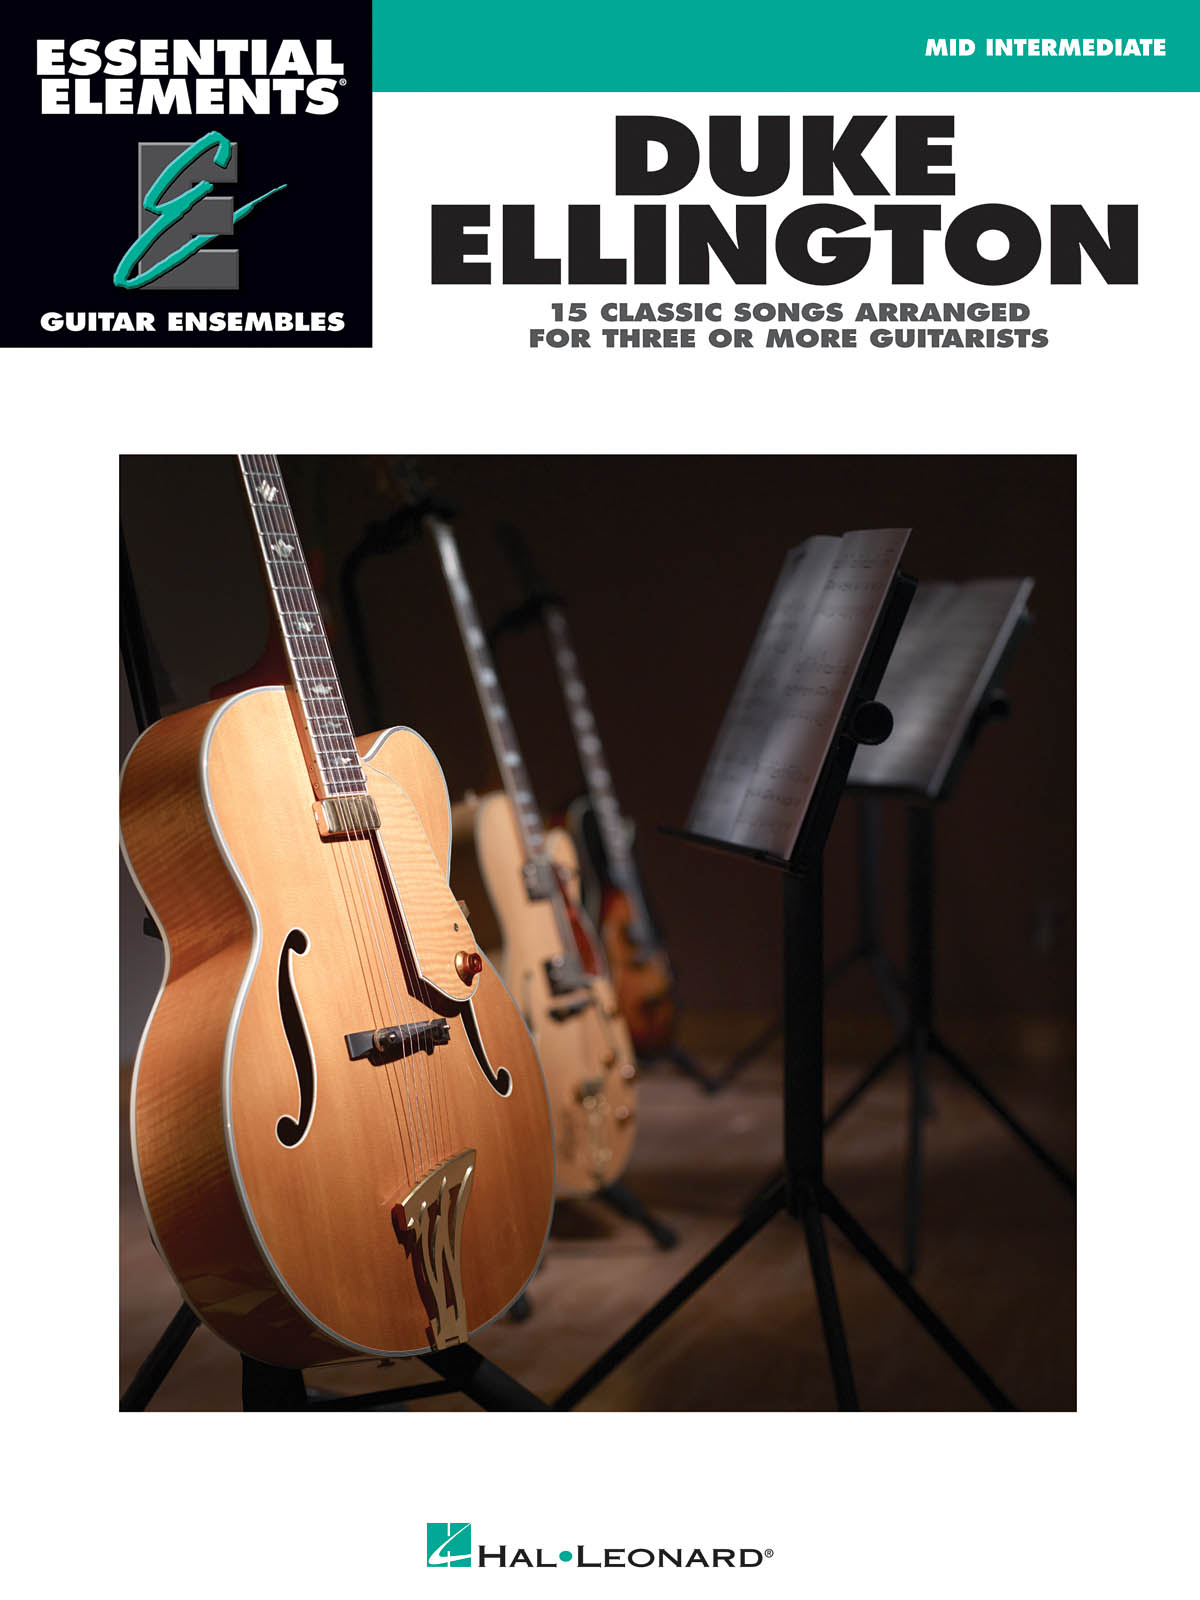 Essential Elements Guitar Ens - Duke Ellington